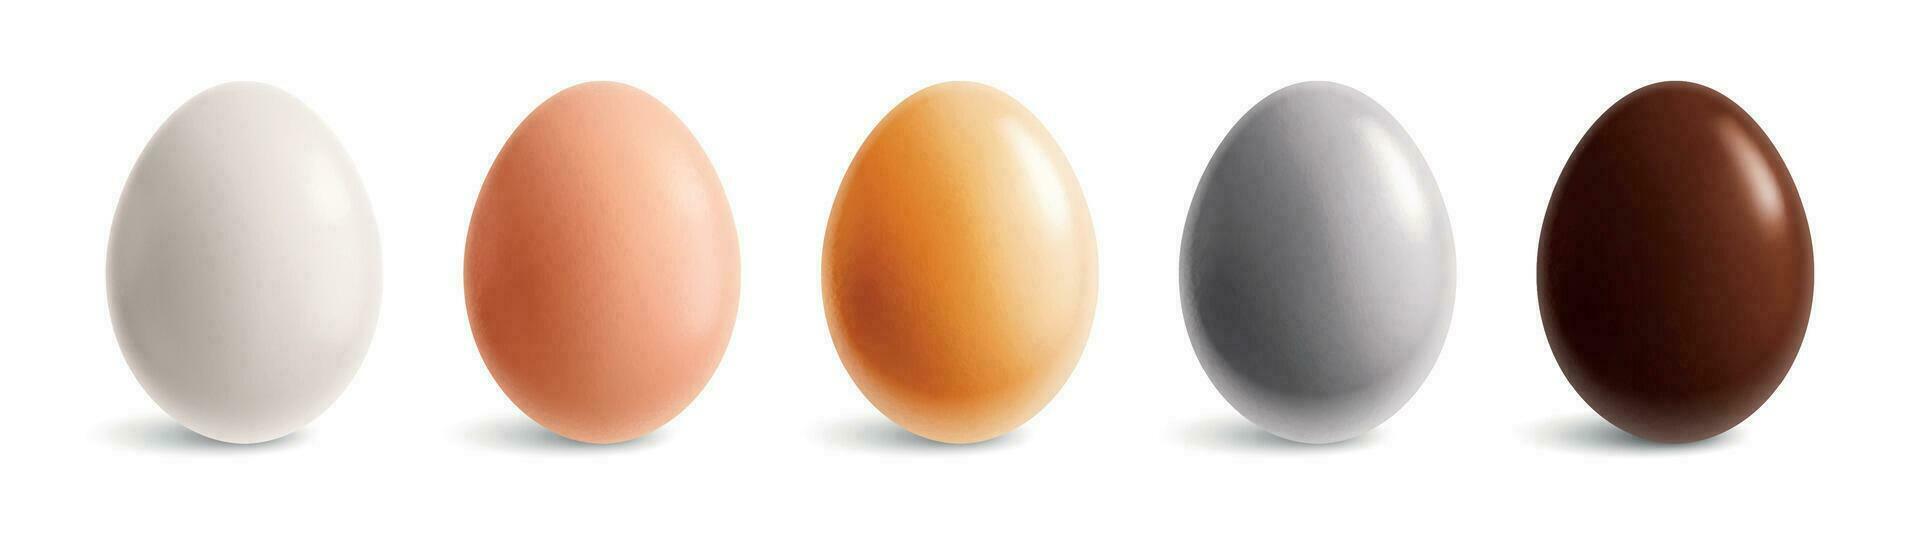 gekleurde eieren realistisch reeks vector